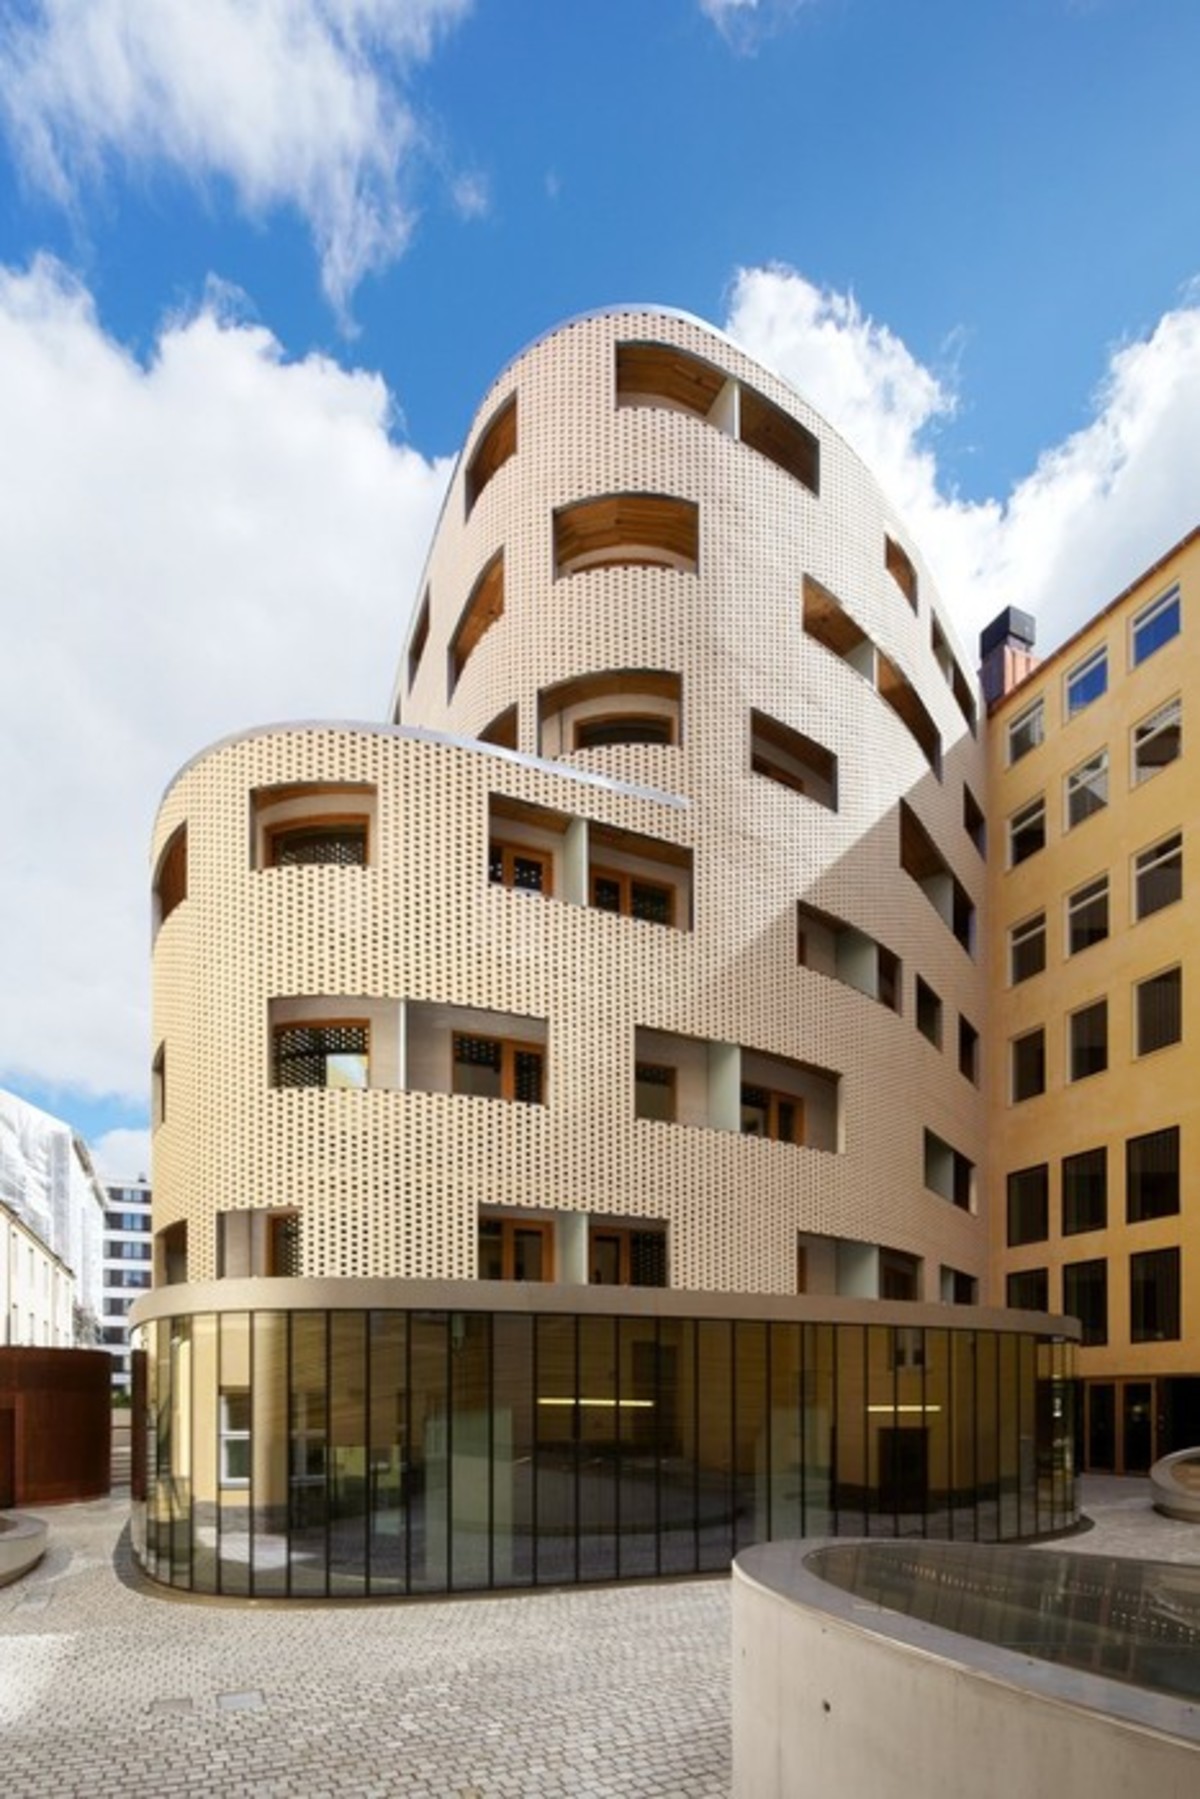 Centrum Konferencyjne Paasitorni w Helsinkach - laureat nagrody specjalnej w konkursie Brick Award 2014, autor: K2S Architects, fot.: Marko Huttnen